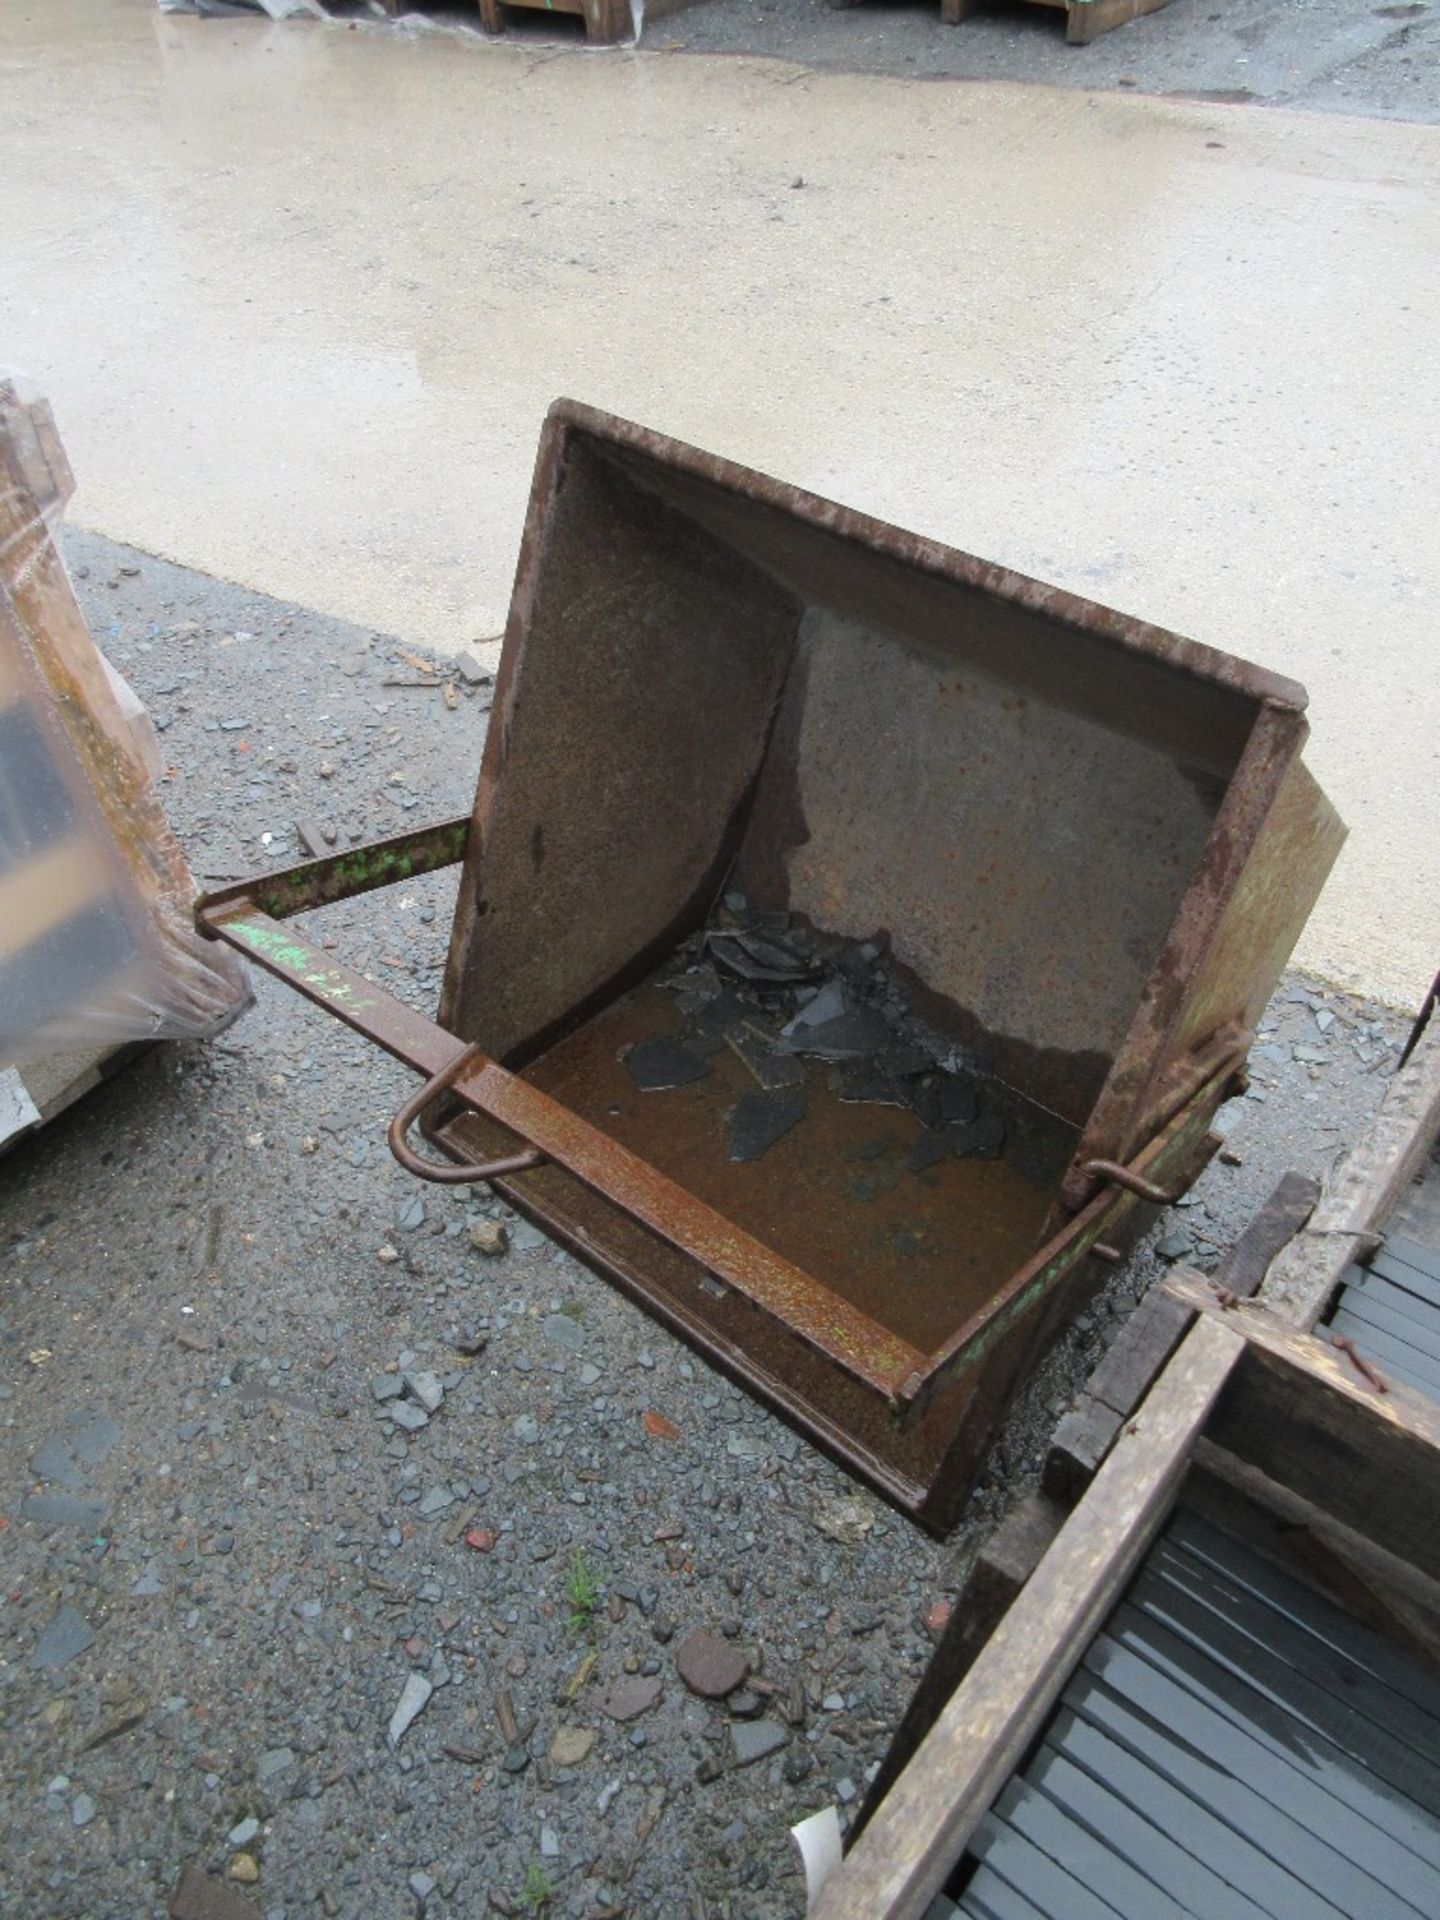 Two steel waste buckets, approx. 600 x 700mm